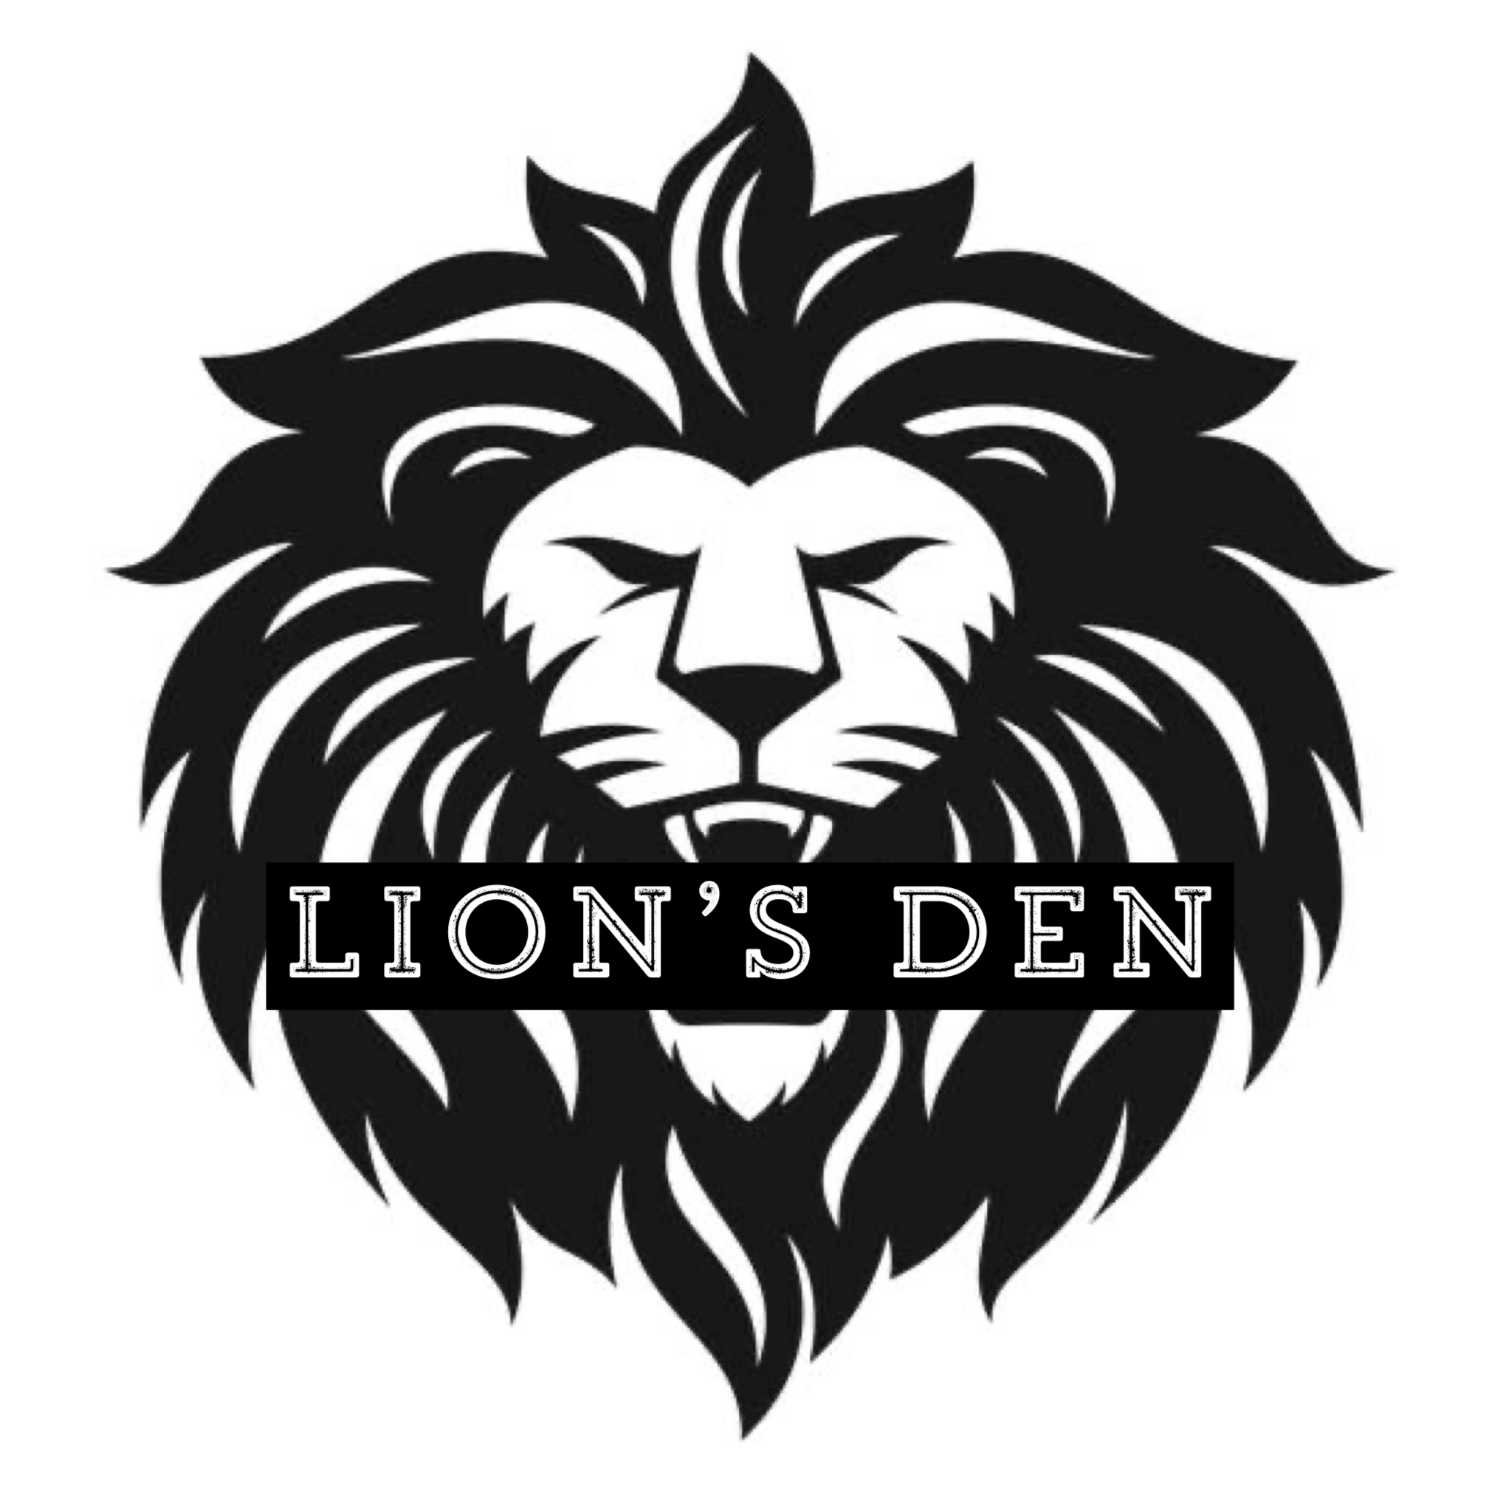 The Lions Den 